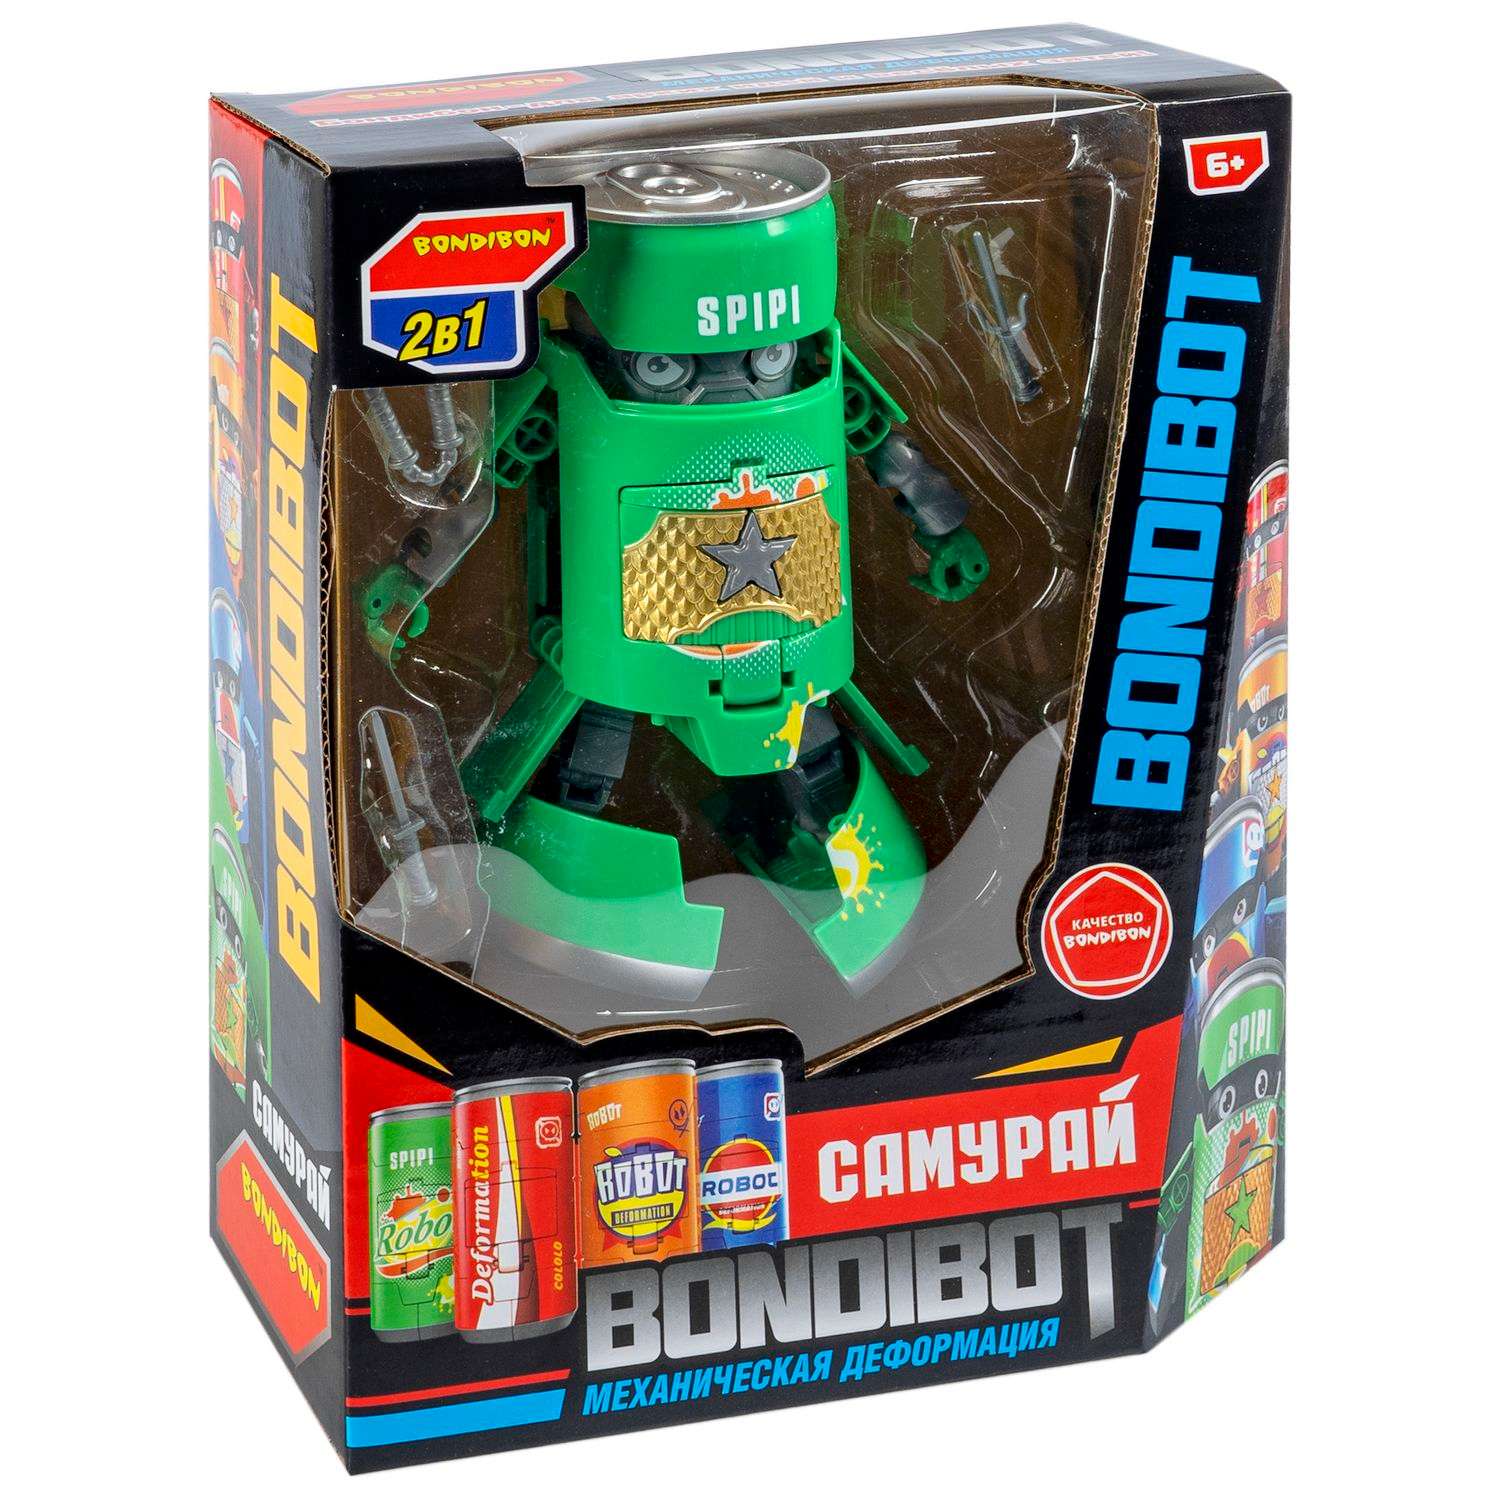 Трансформер BONDIBON BONDIBOT 2 в 1 банка - робот Самурай с оружием зелёного цвета - фото 3